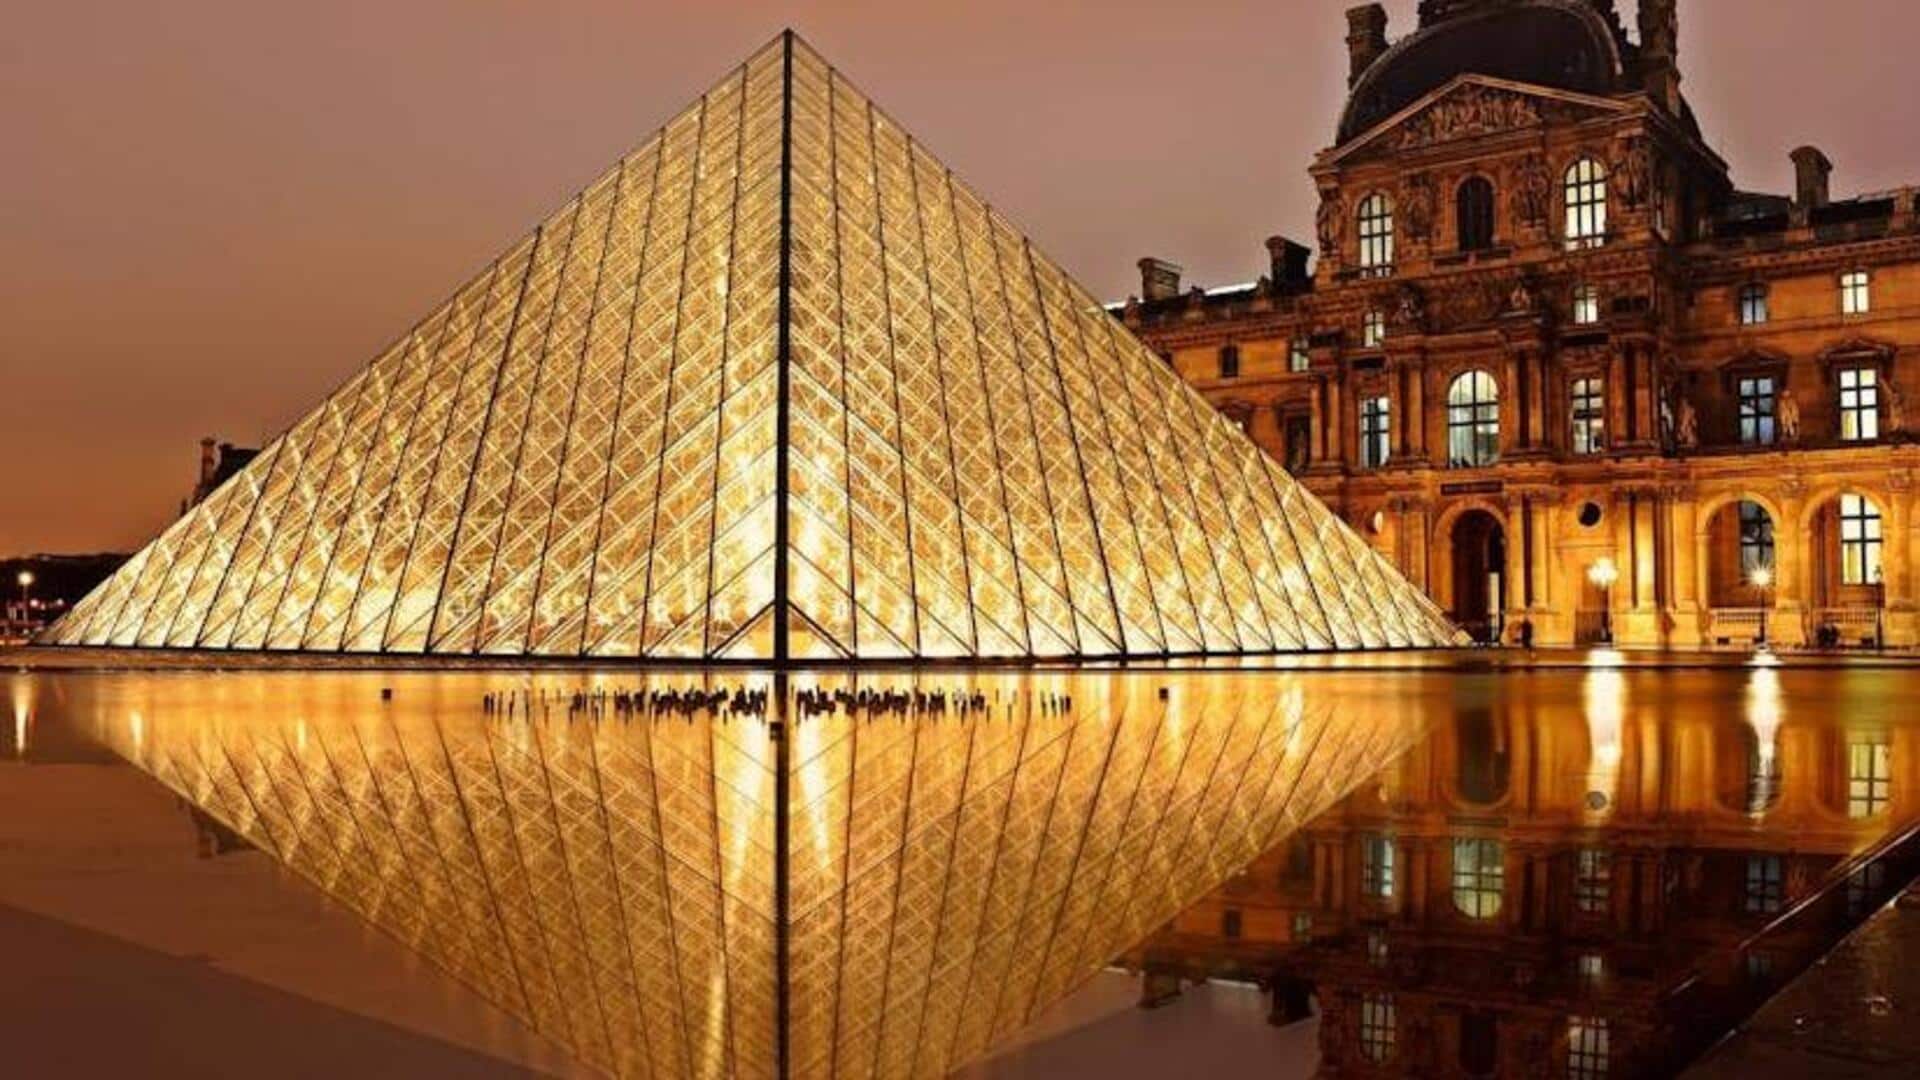 Make your way to Paris' hidden bohemian gems